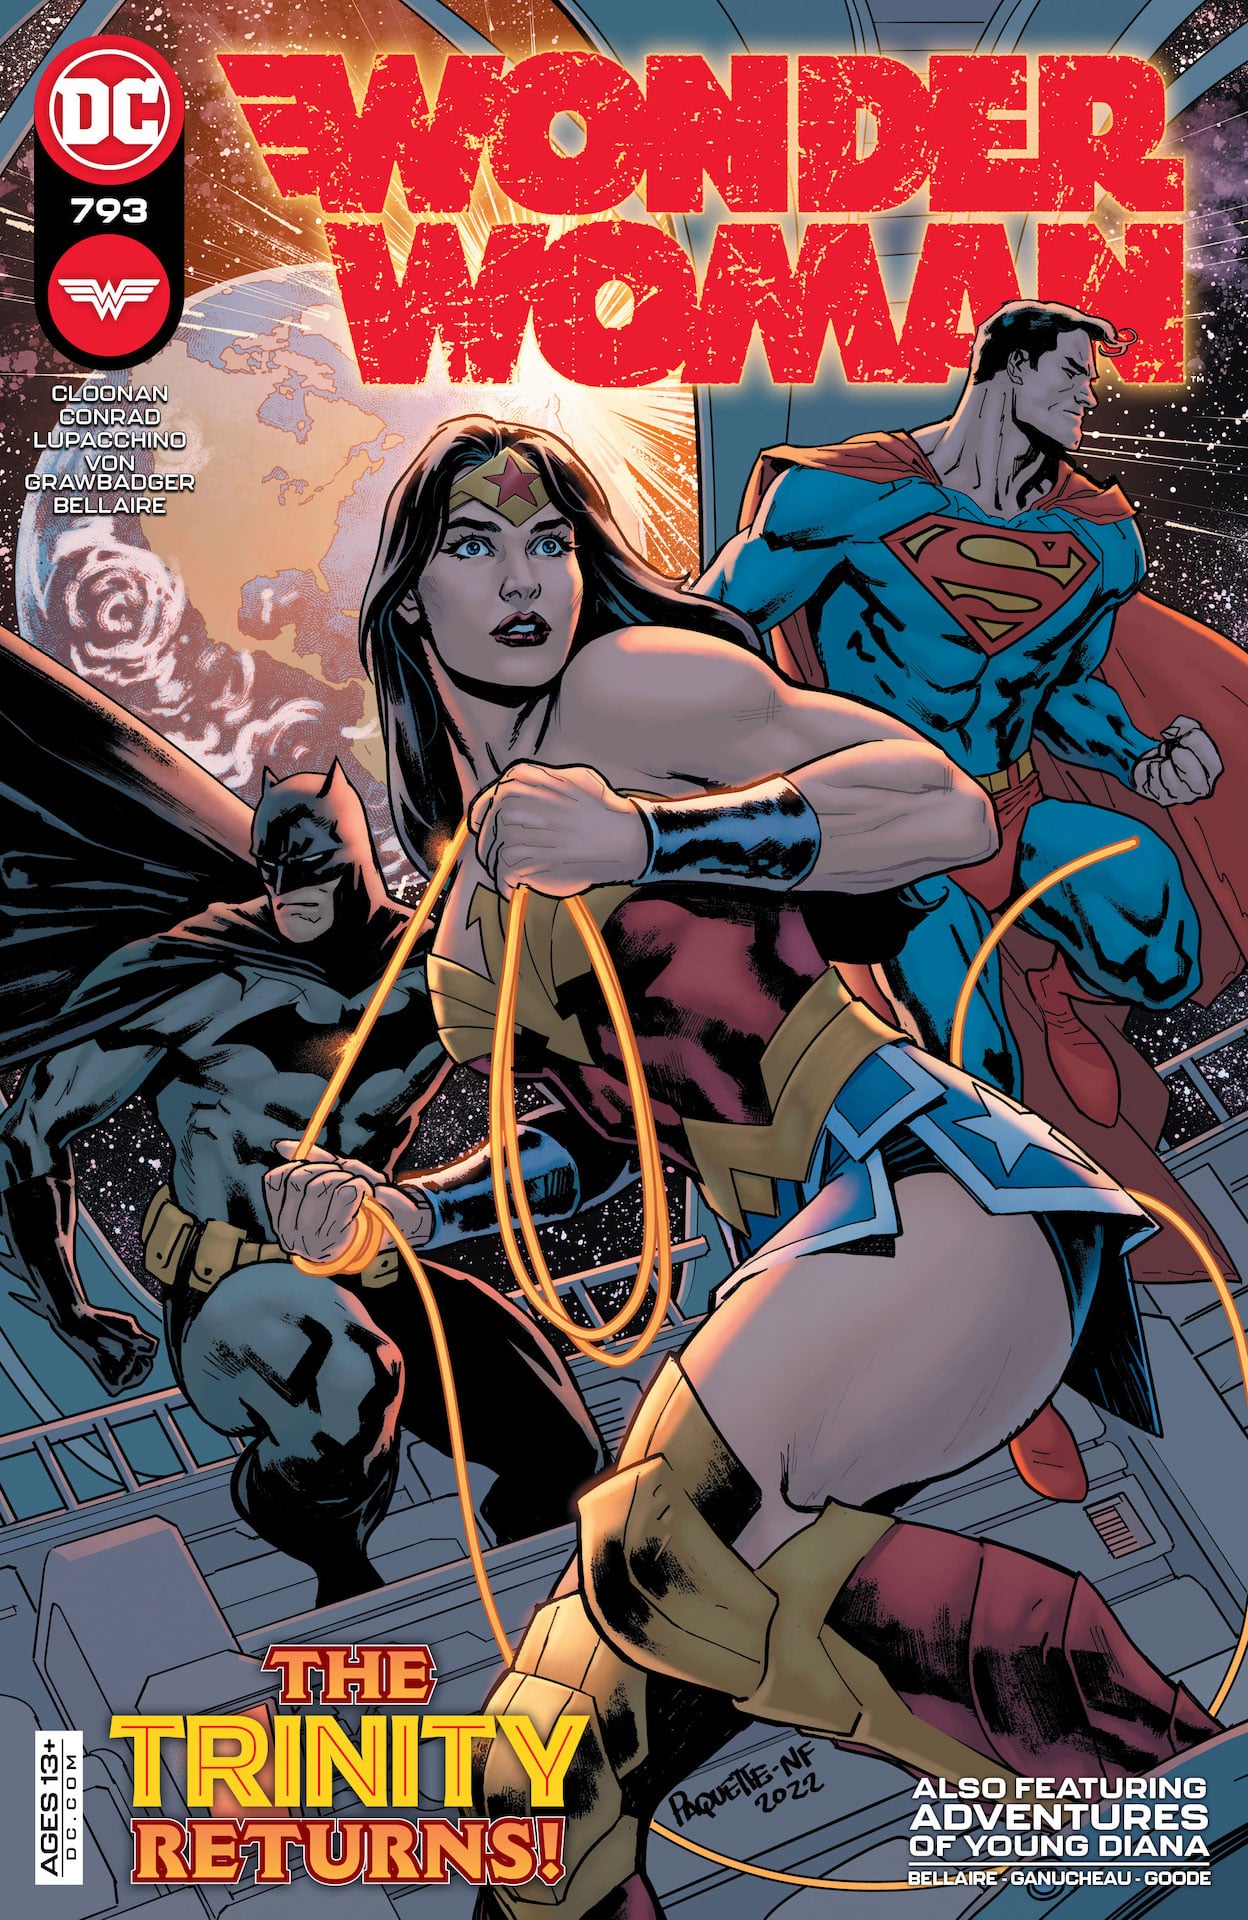 DC Preview: Wonder Woman #793